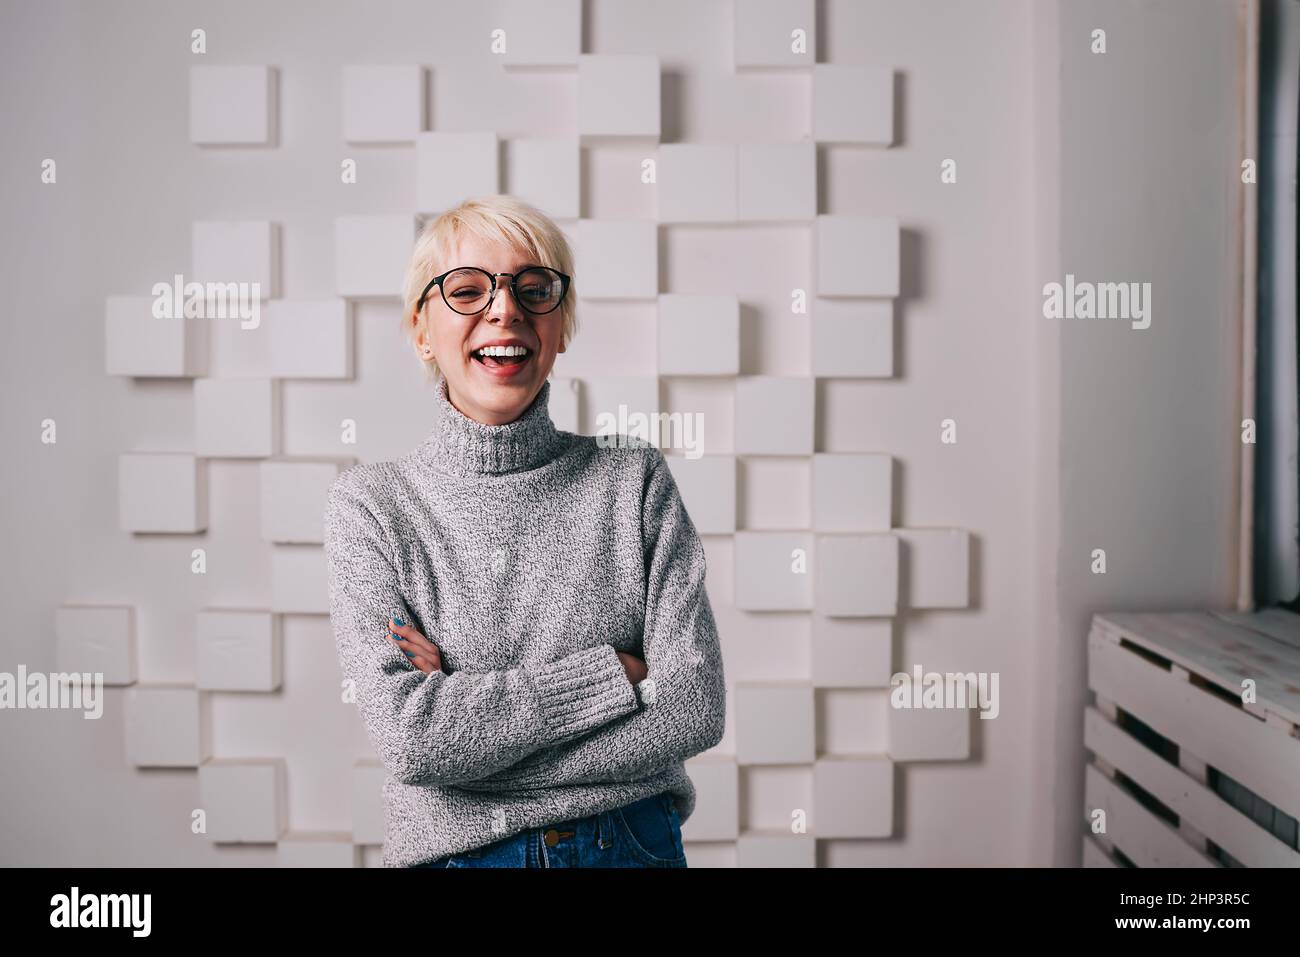 Une femme joyeuse riant dans une pièce lumineuse Banque D'Images